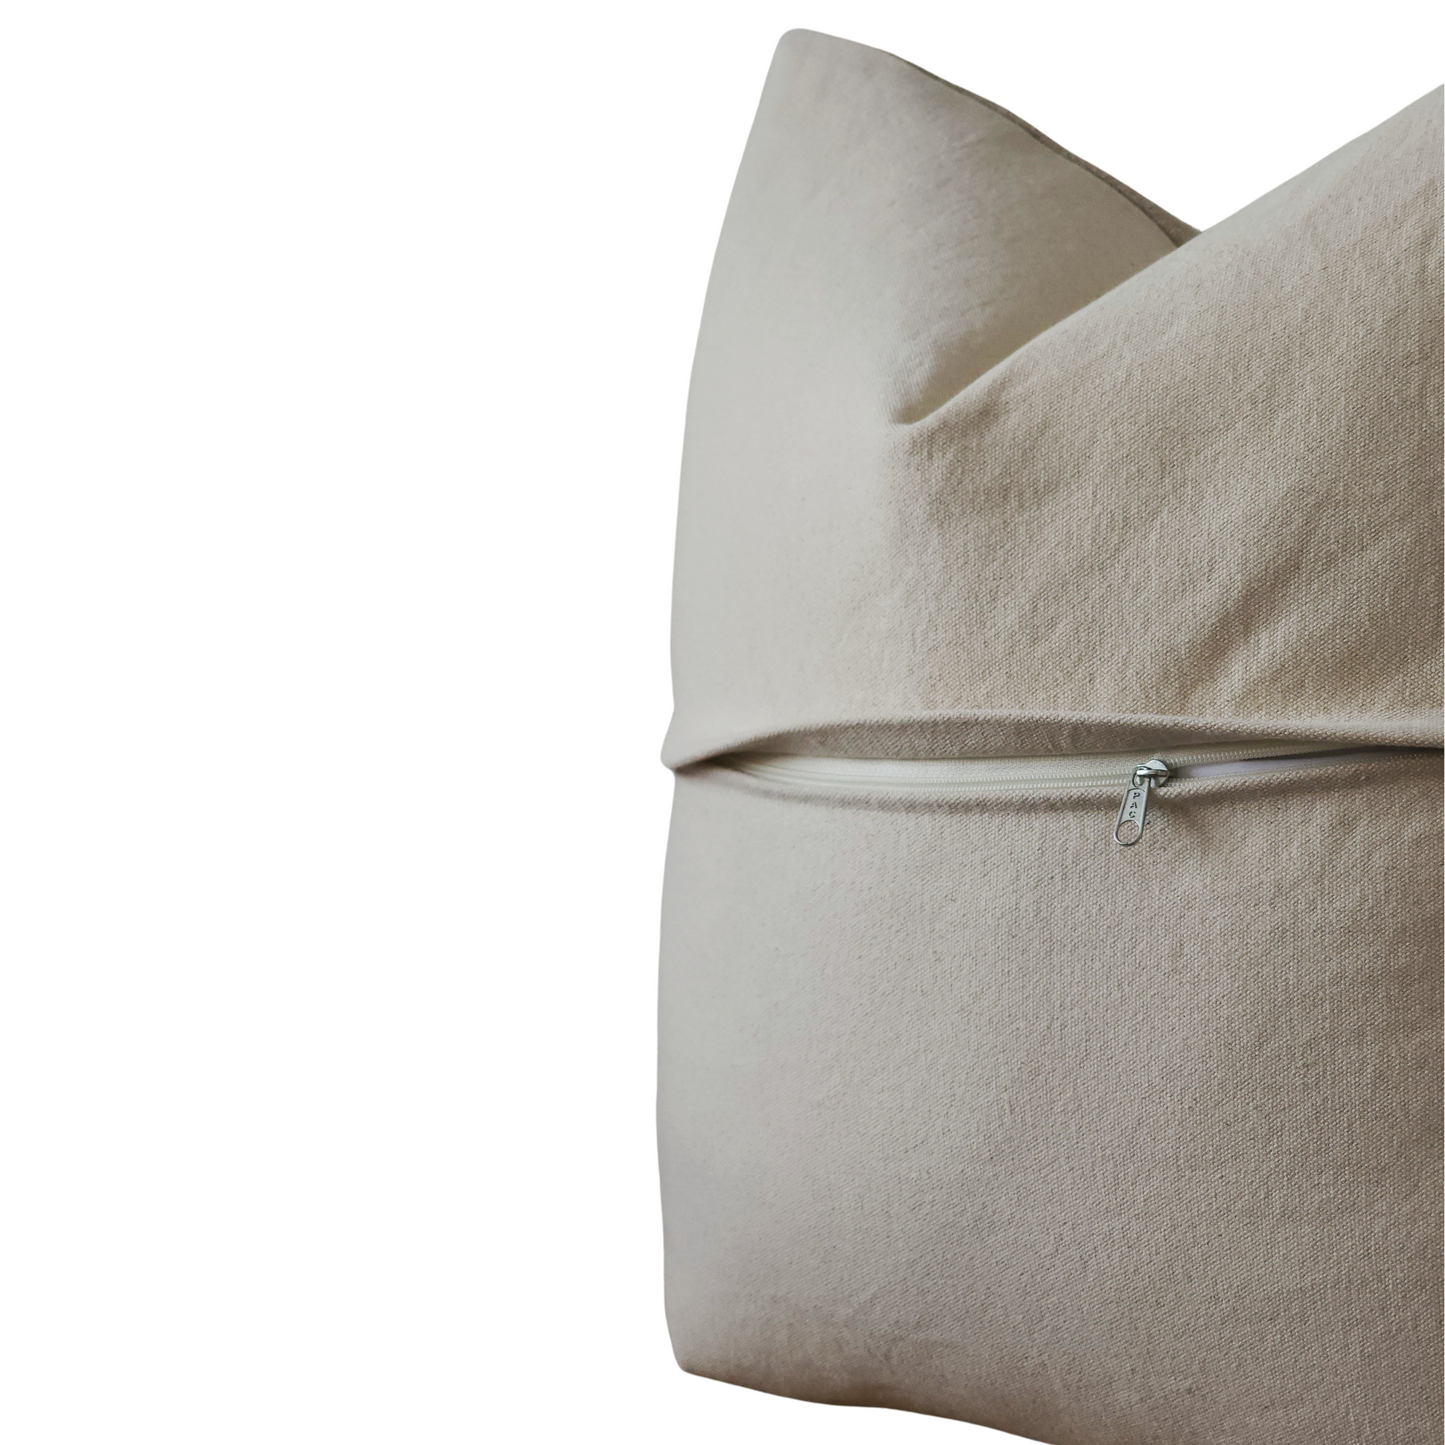 Parker Neutral Organic Wool High Textured Throw Pillow